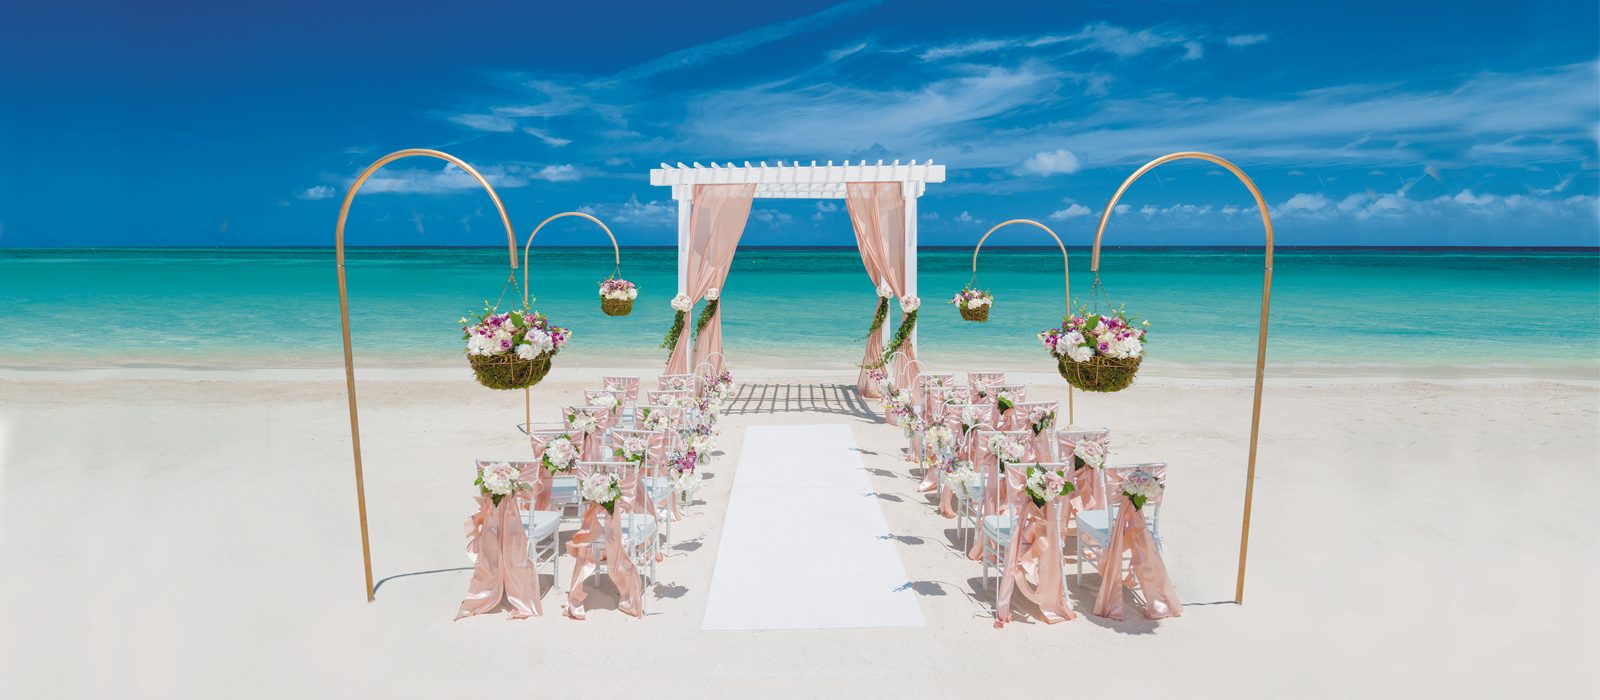 Free Weddings Beach Wedding Abroad Header